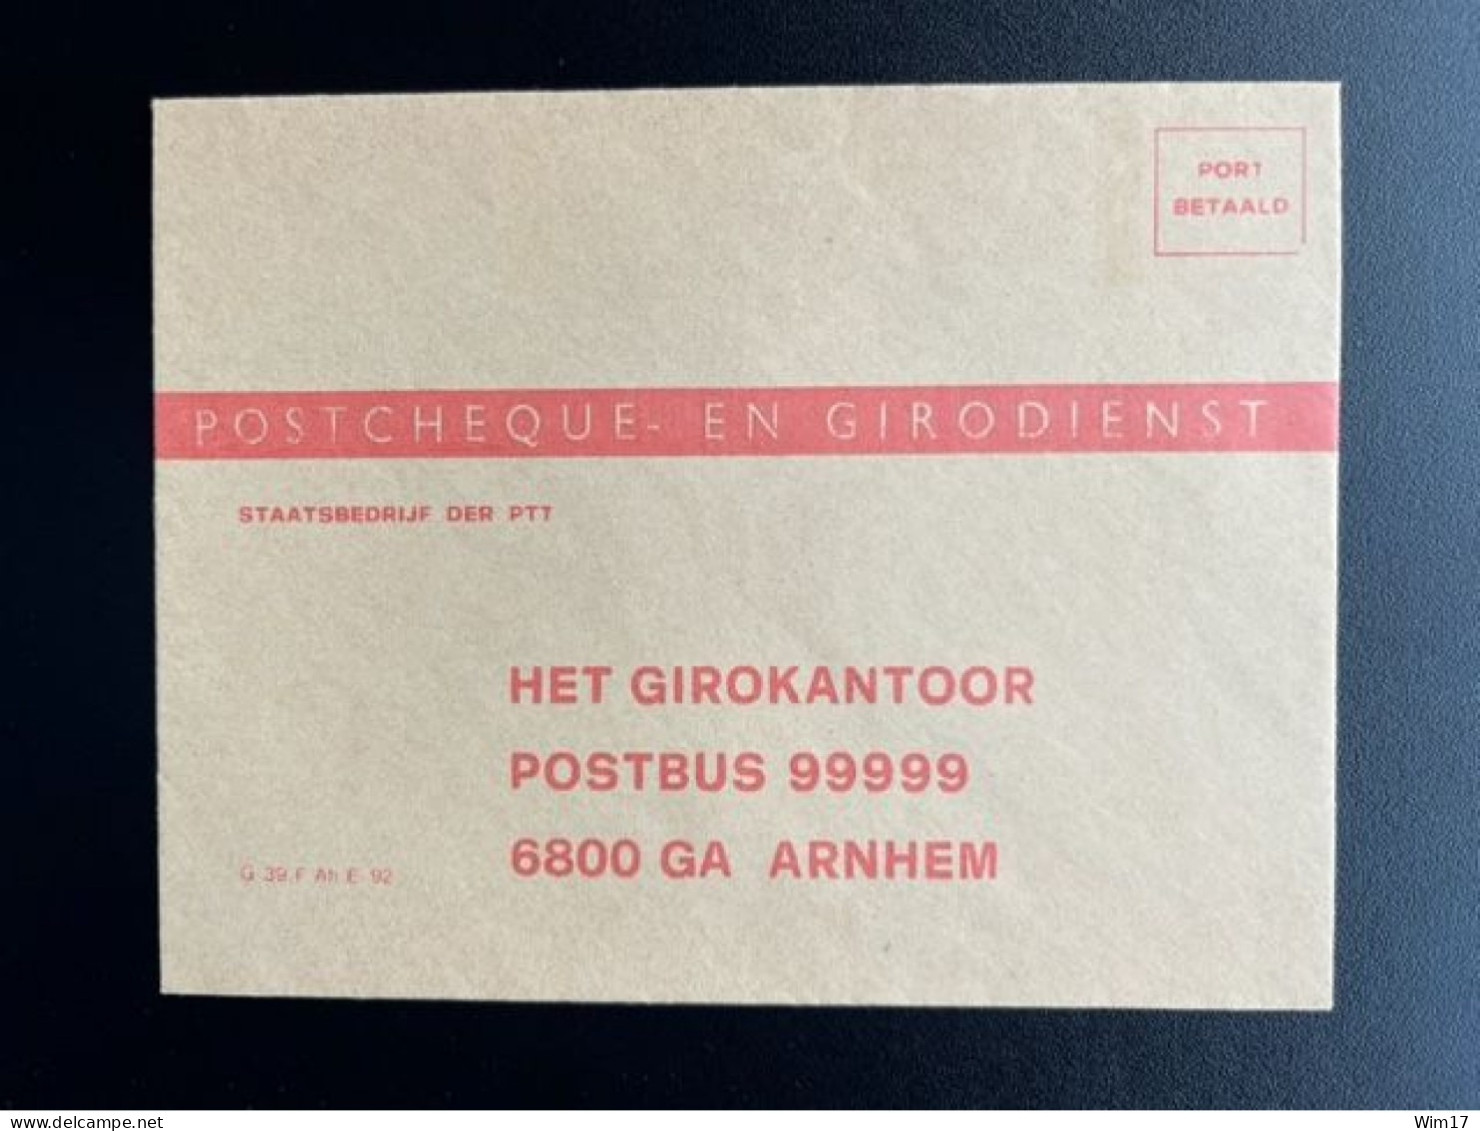 NETHERLANDS 19?? UNUSED ENVELOPE POSTCHEQUE- EN GIRODIENST NEDERLAND G 39 F AH E 92 - Briefe U. Dokumente